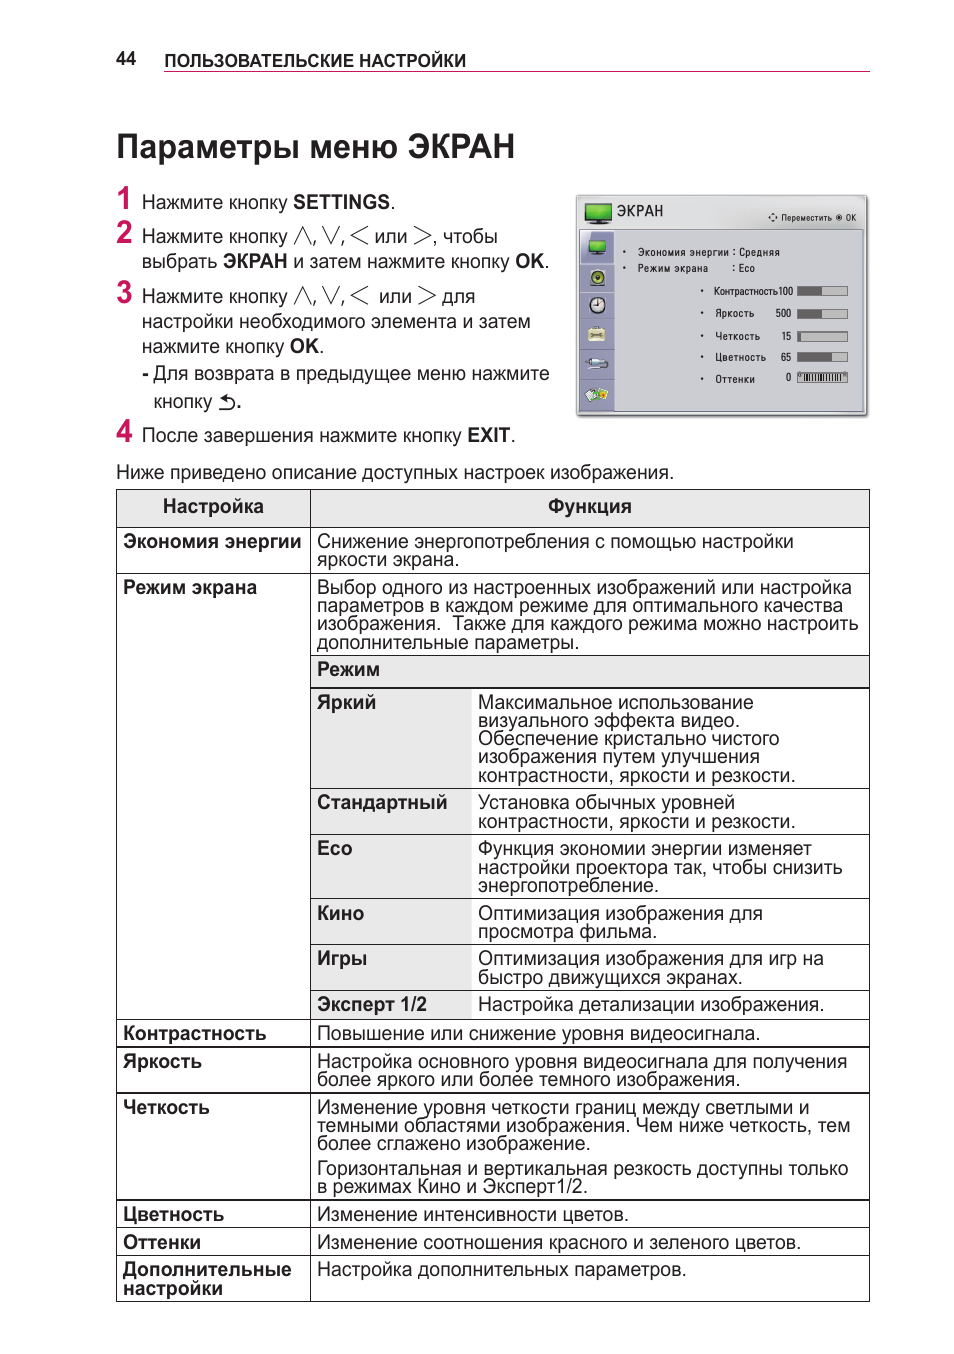 Параметры меню экран | Инструкция по эксплуатации LG PG60G | Страница 44 / 60